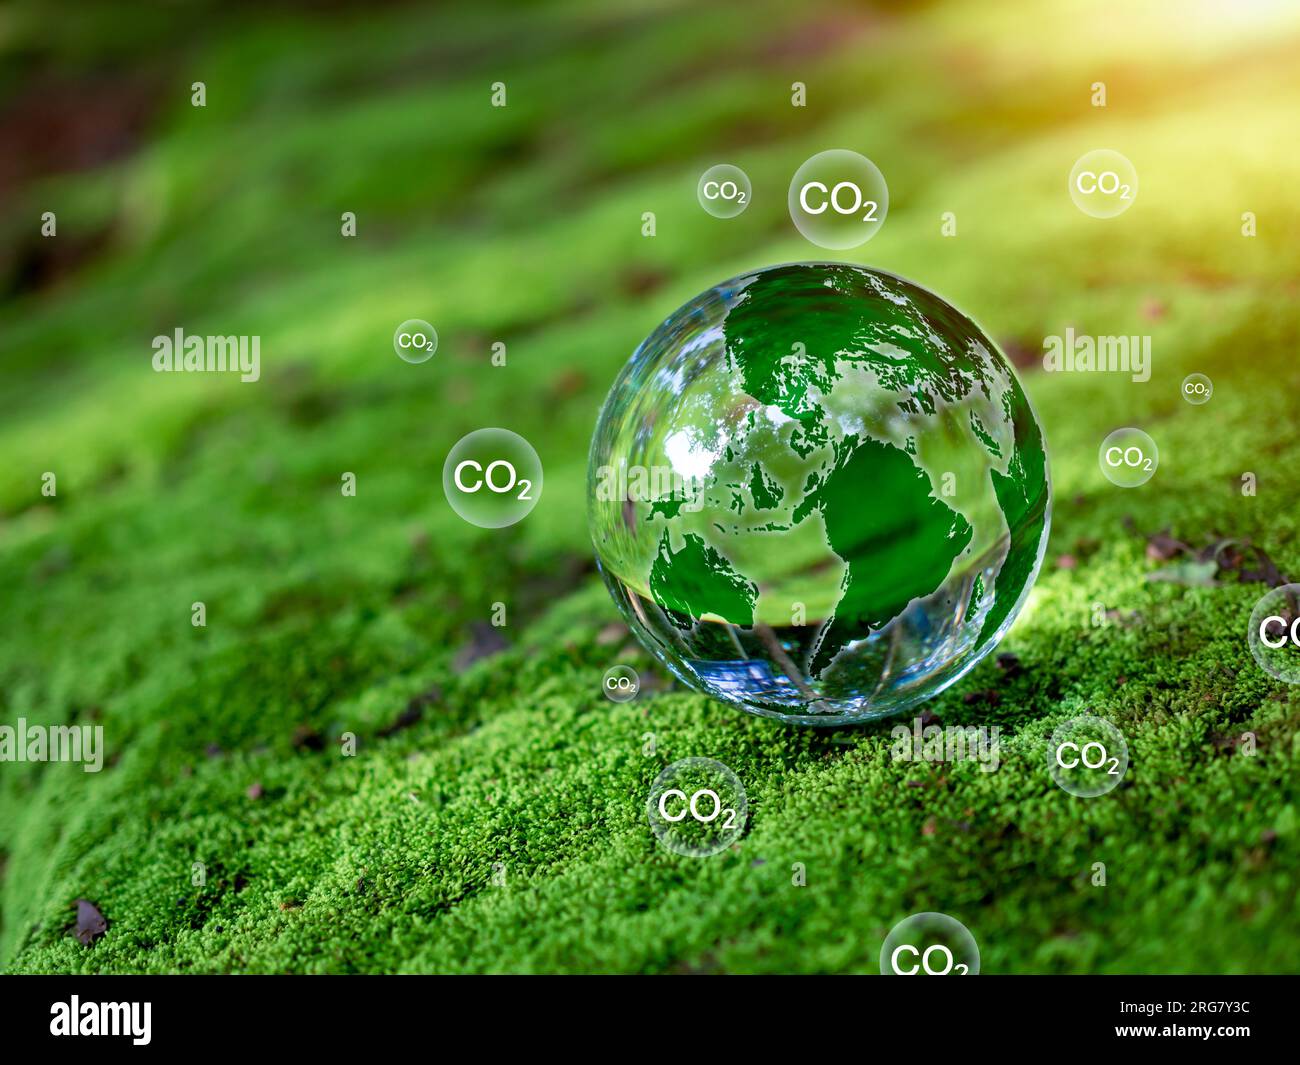 Kristallkugel auf Moos im grünen Wald. Konzept zur Reduzierung der CO2-Emissionen, saubere und umweltfreundliche Umwelt ohne Kohlendioxidemissionen. Bäume Pflanzen Stockfoto